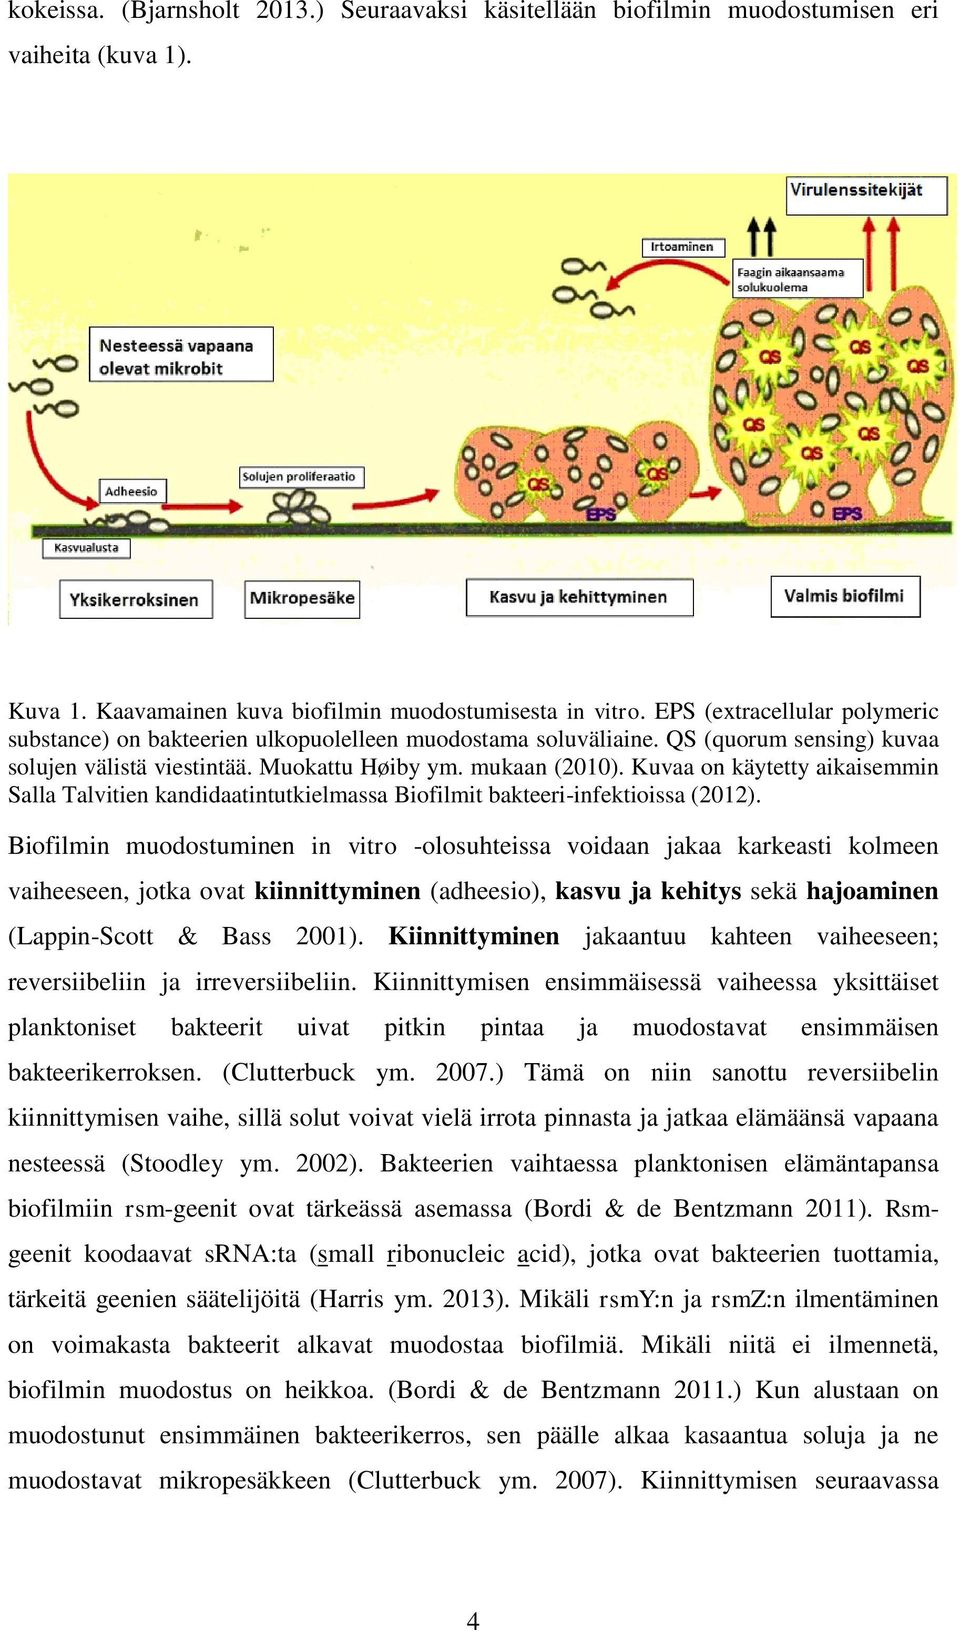 Kuvaa on käytetty aikaisemmin Salla Talvitien kandidaatintutkielmassa Biofilmit bakteeri-infektioissa (2012).